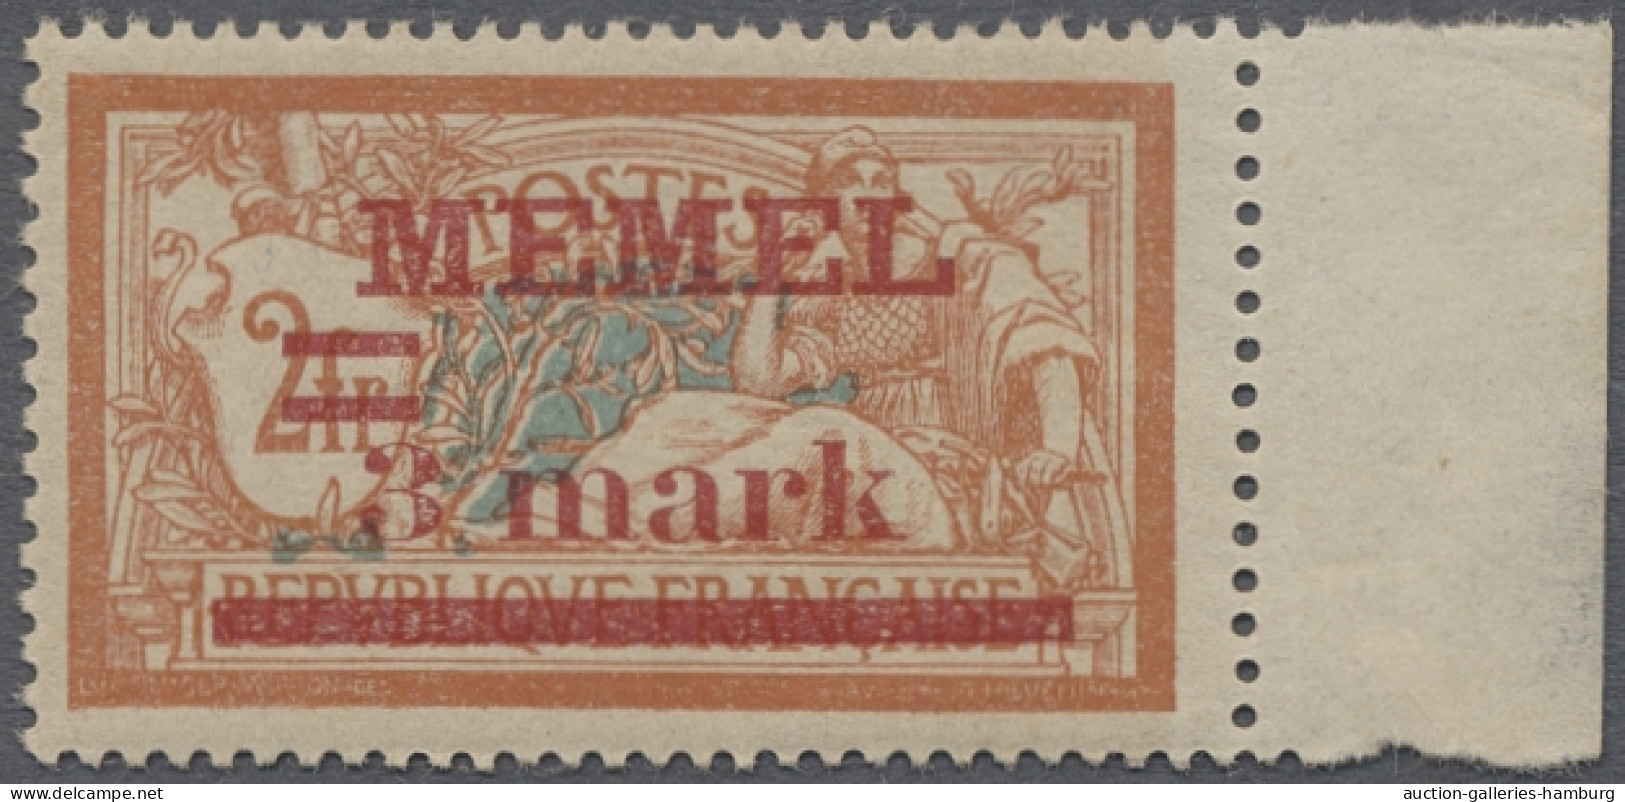 **/* Memel: 1920-1939, postfrische Sammlung (einige Werte ungebraucht bzw. Anhaftunge